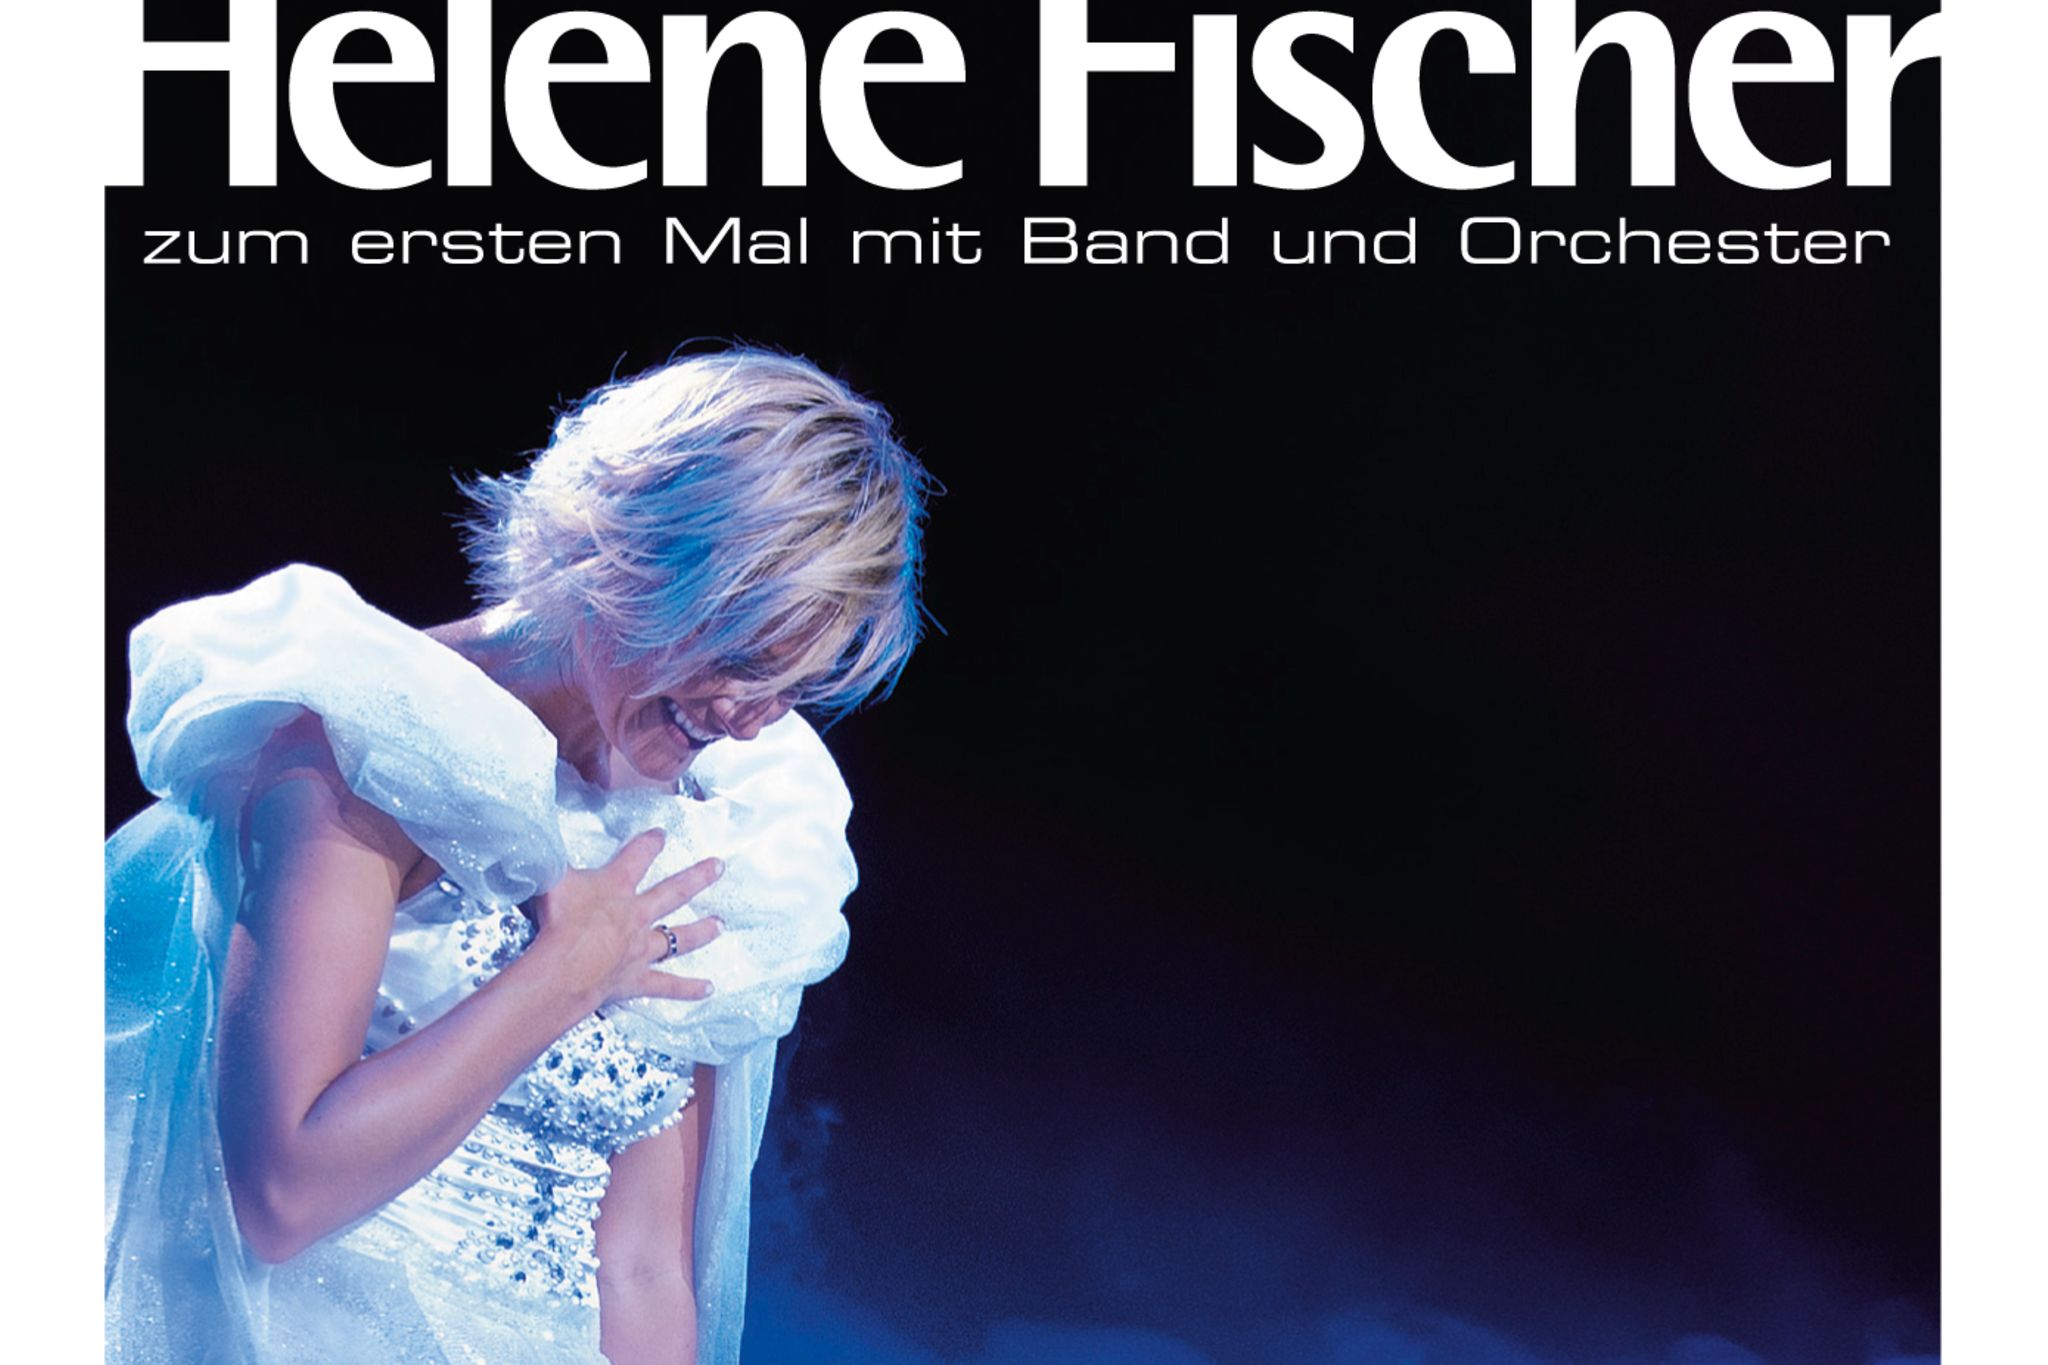 Helene Fischer - Live-Tour in 2012